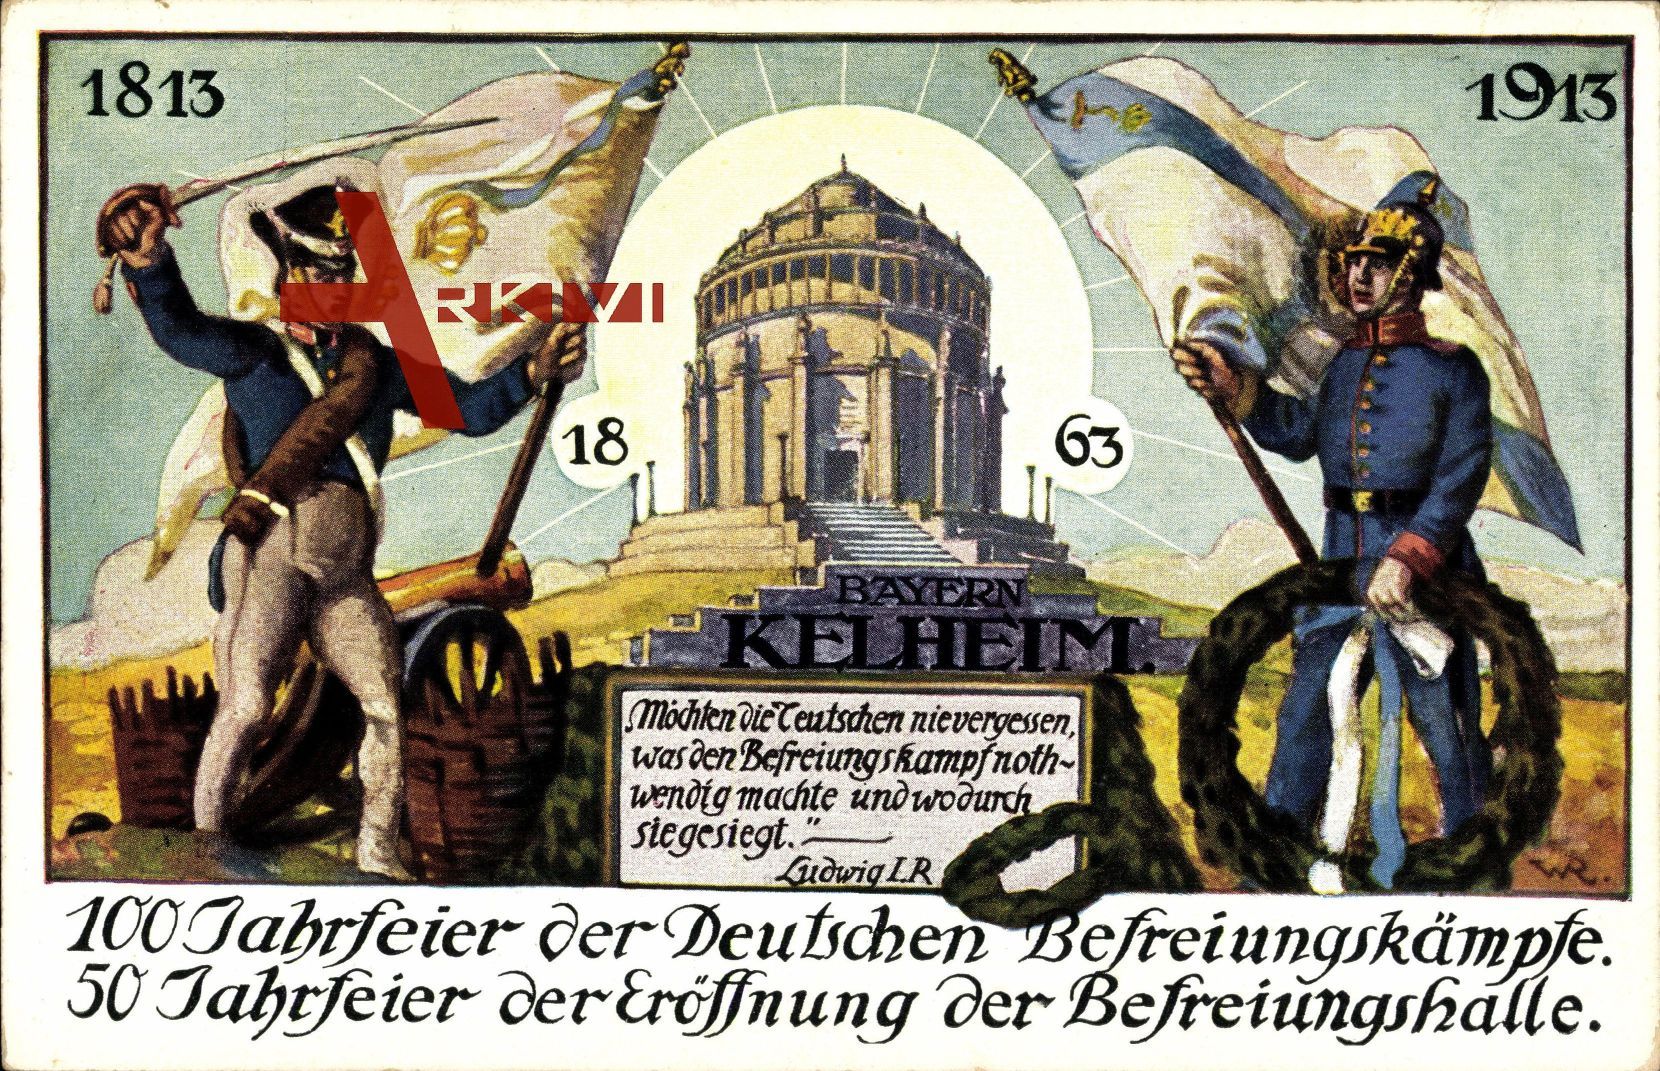 Regensburg, 100 Jahrfeier der Dt. Befreiungskämpfe, Befreiungshalle, 1913